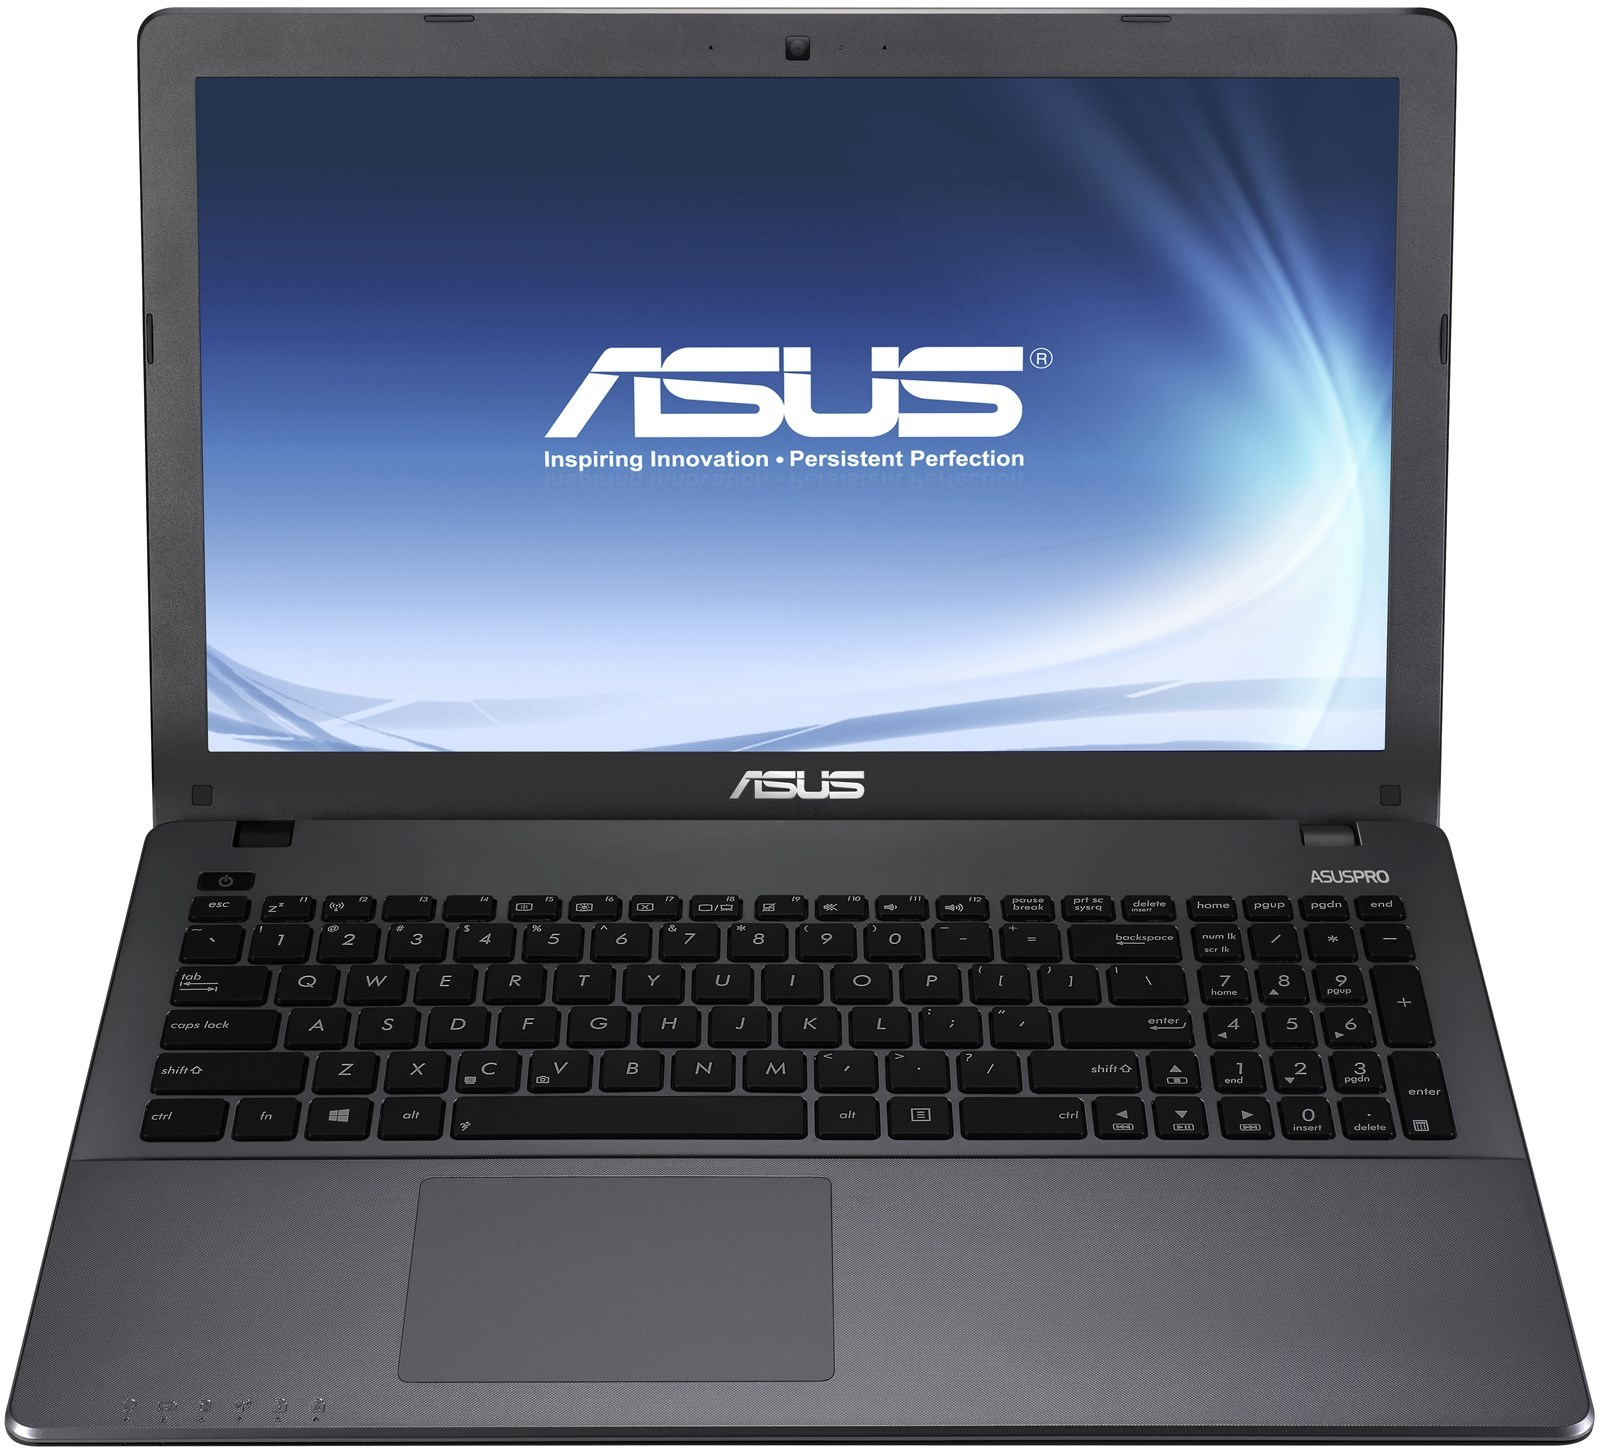 Laptop Asus, nhiều cấu hình cao thấp, giá lẻ bằng giá sỉ, tháng ban hàng ko lời!